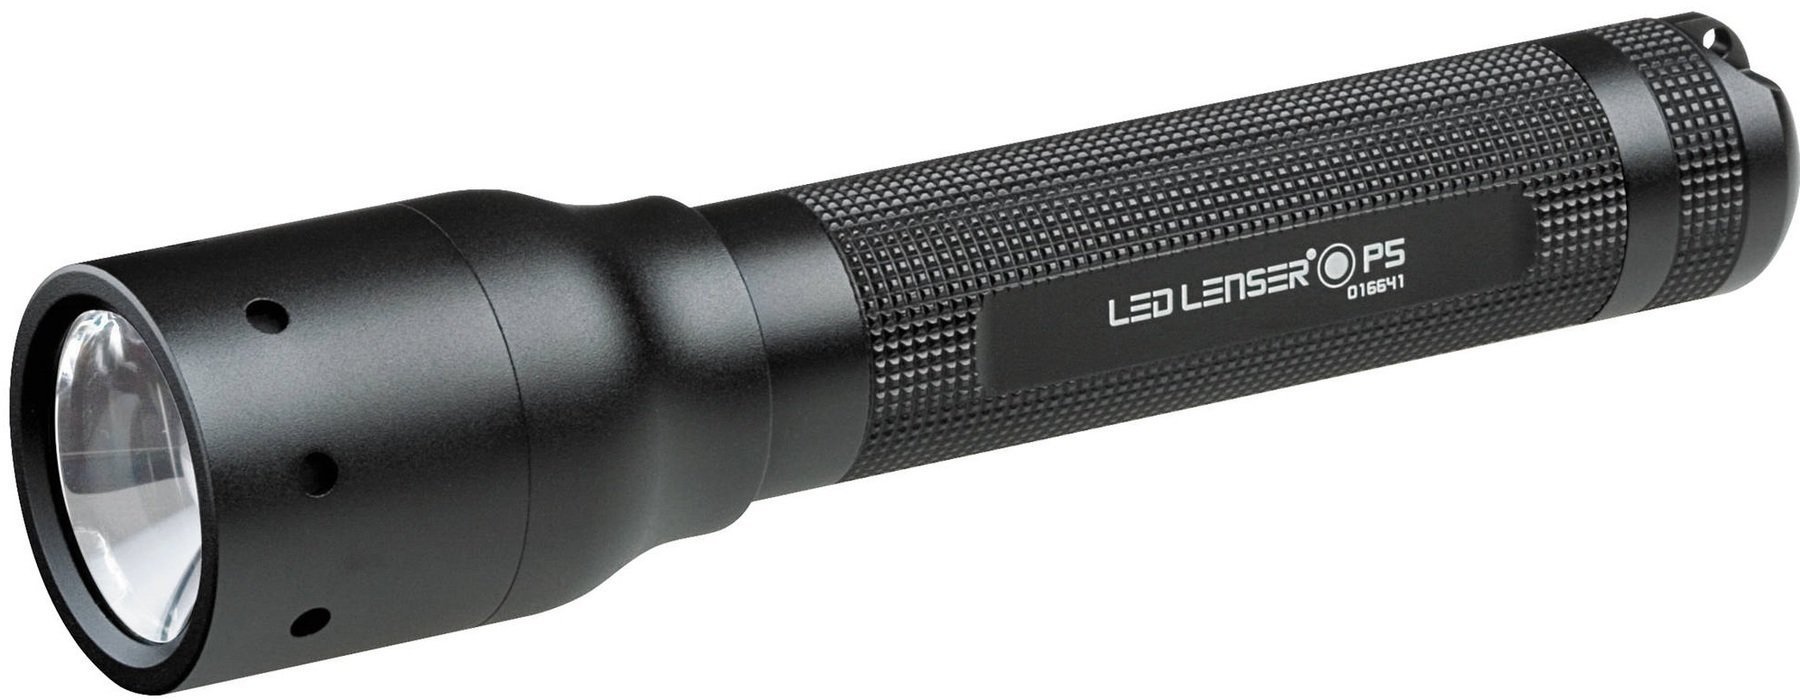 Taschenlampe Led Lenser P5 Taschenlampe